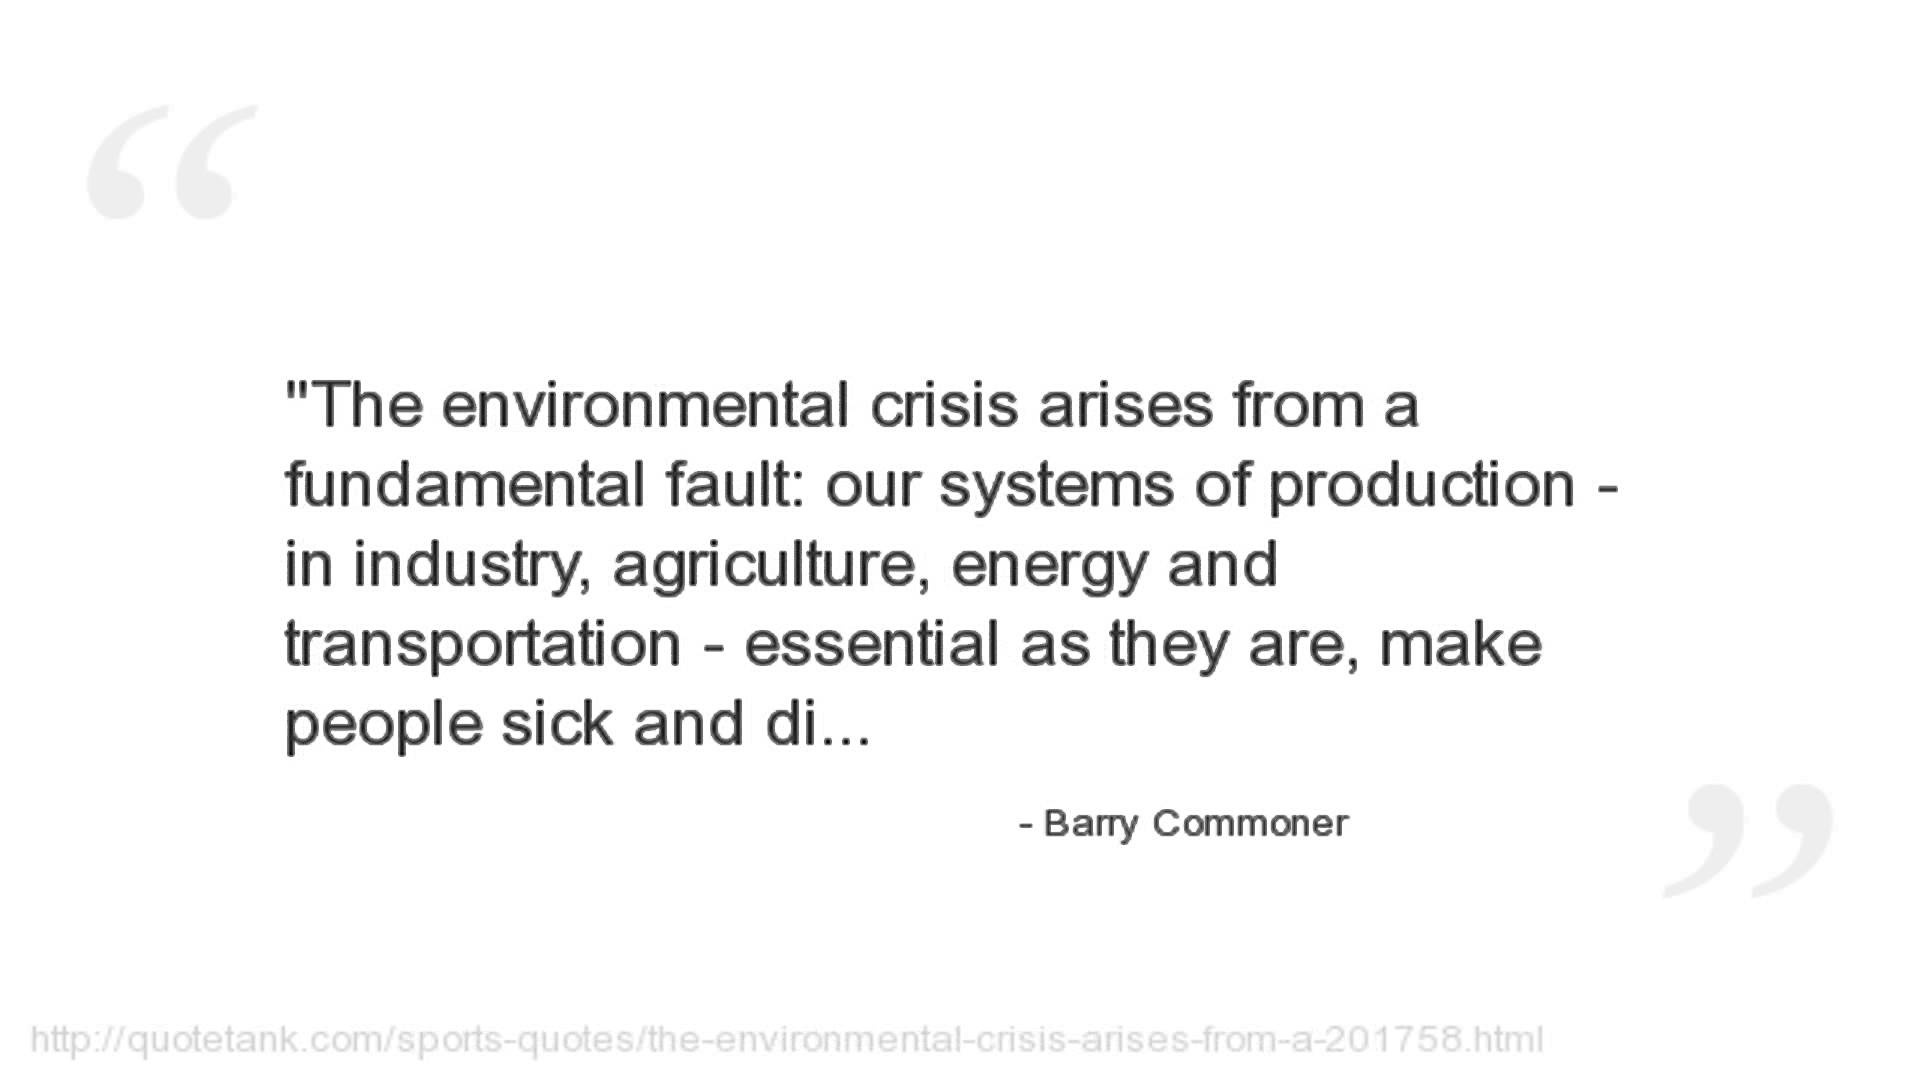 Barry Commoner's quote